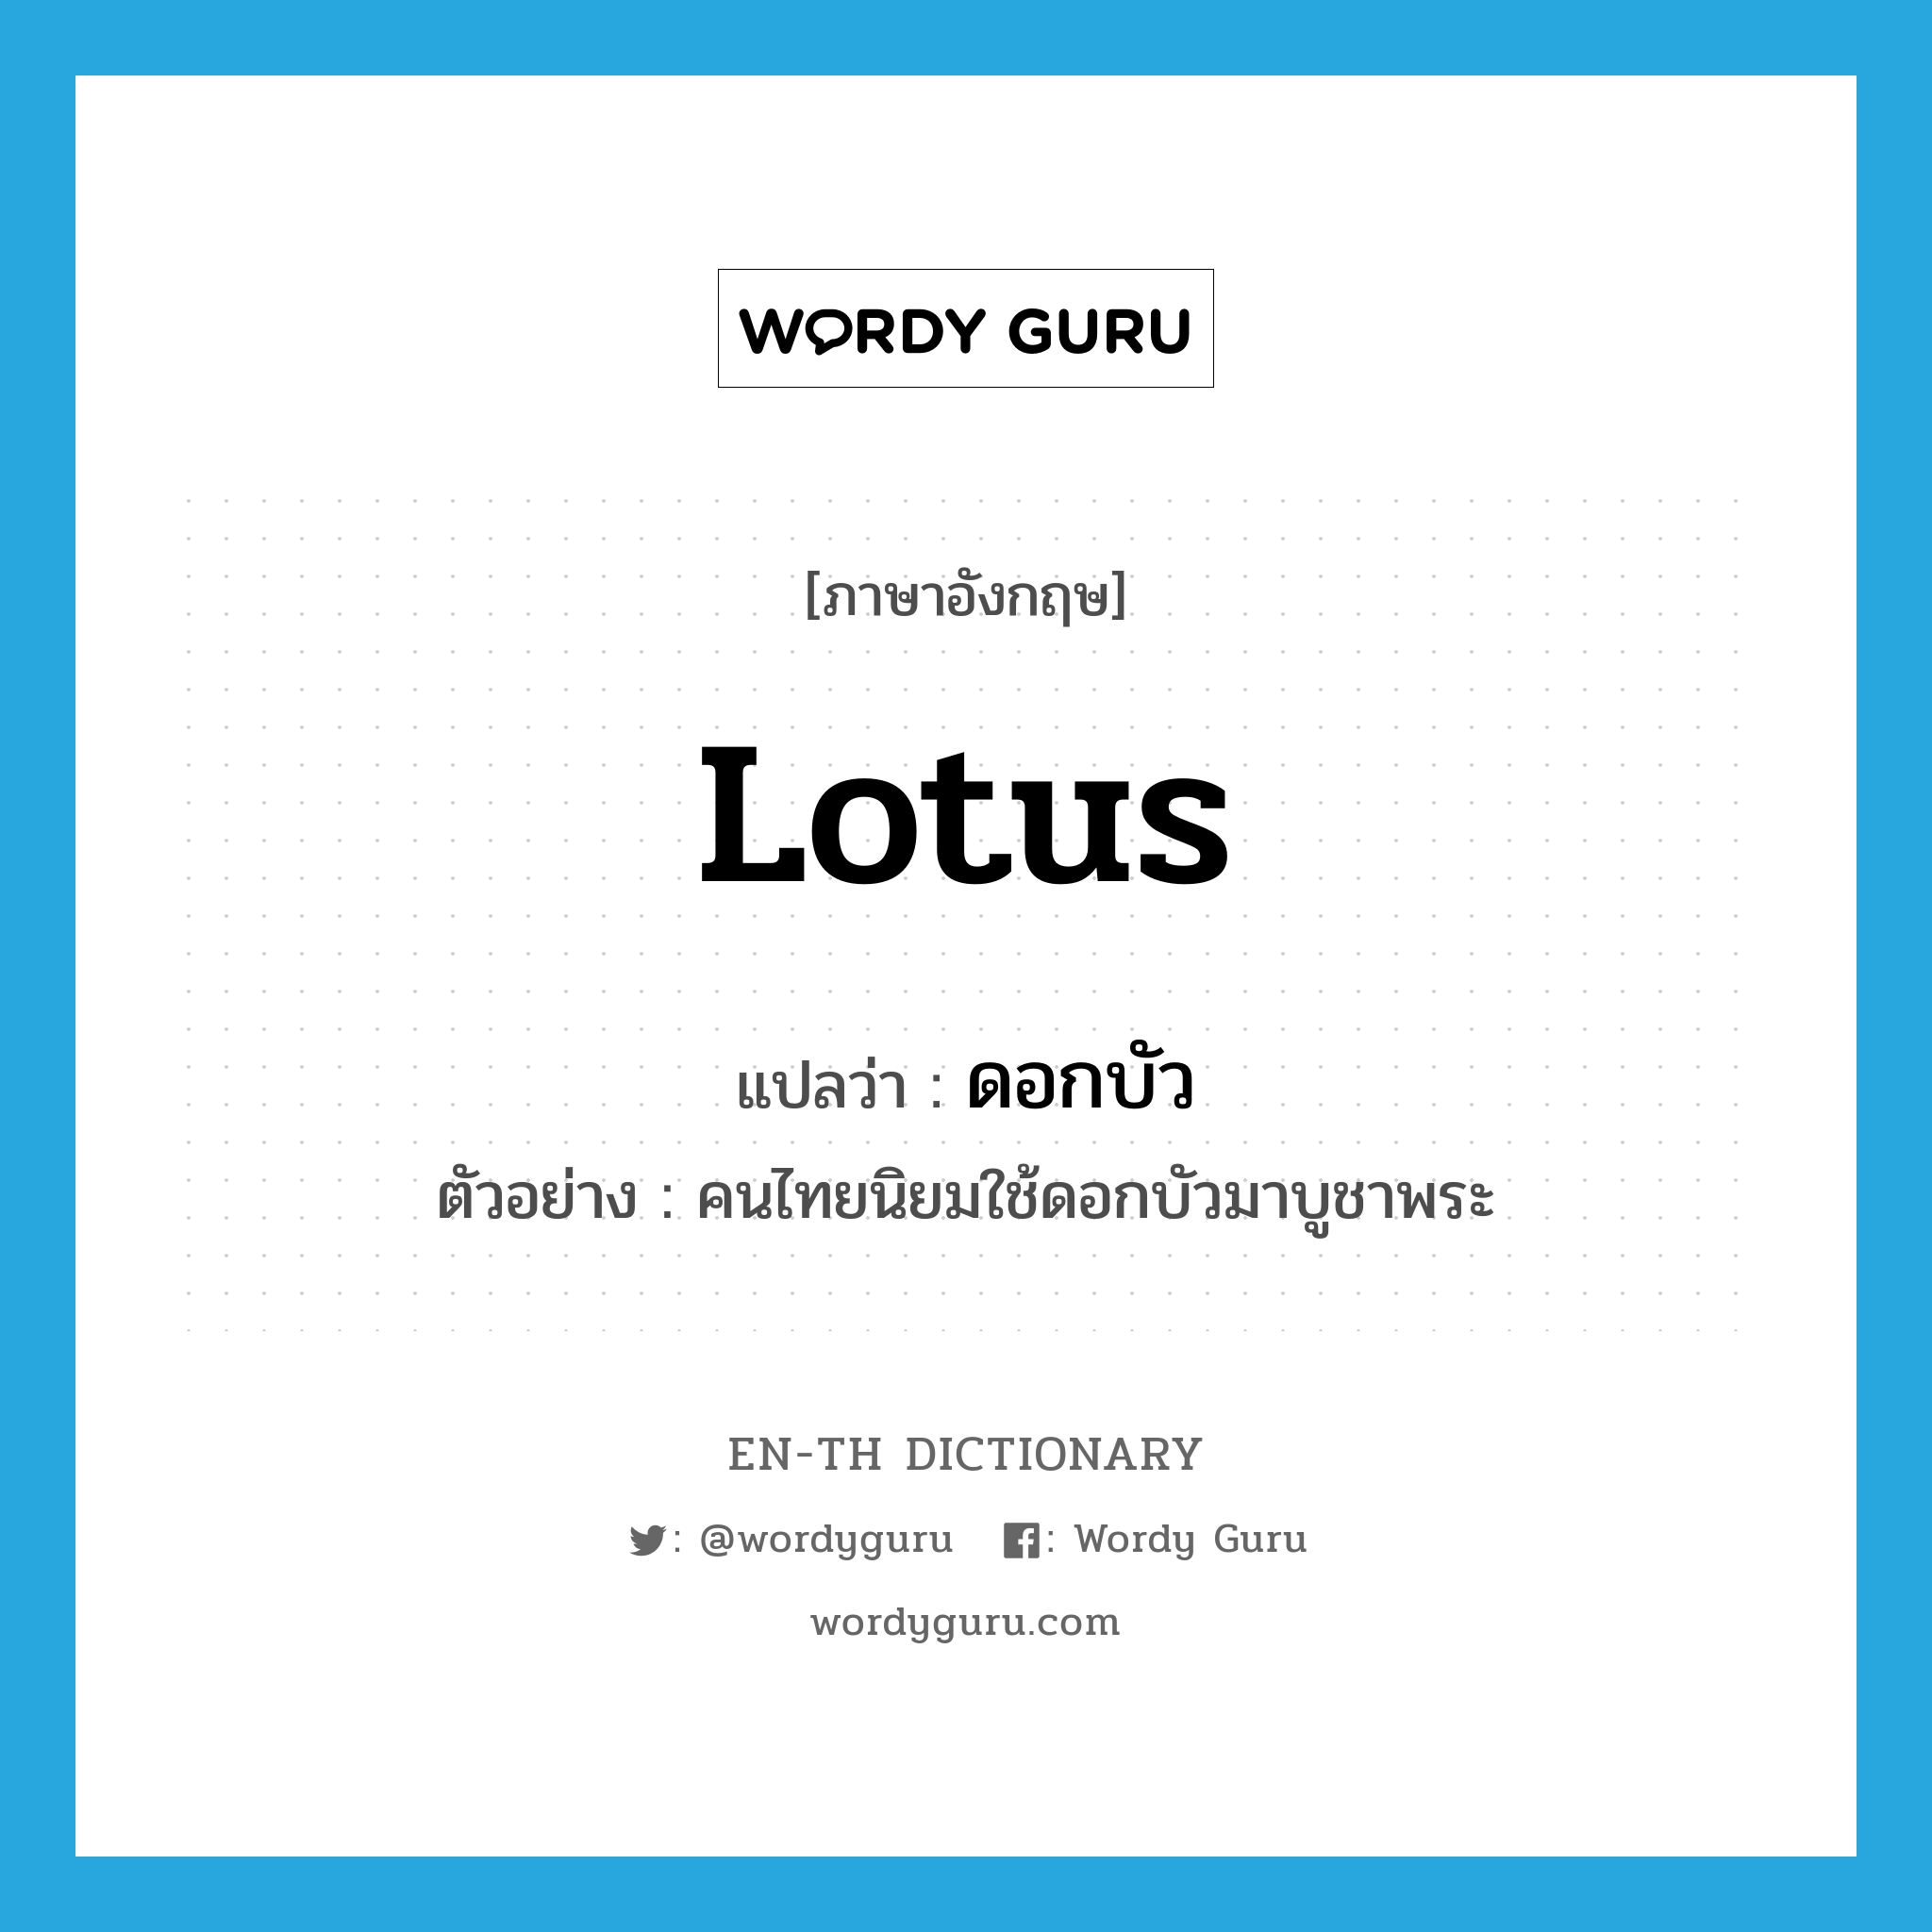 lotus แปลว่า?, คำศัพท์ภาษาอังกฤษ lotus แปลว่า ดอกบัว ประเภท N ตัวอย่าง คนไทยนิยมใช้ดอกบัวมาบูชาพระ หมวด N